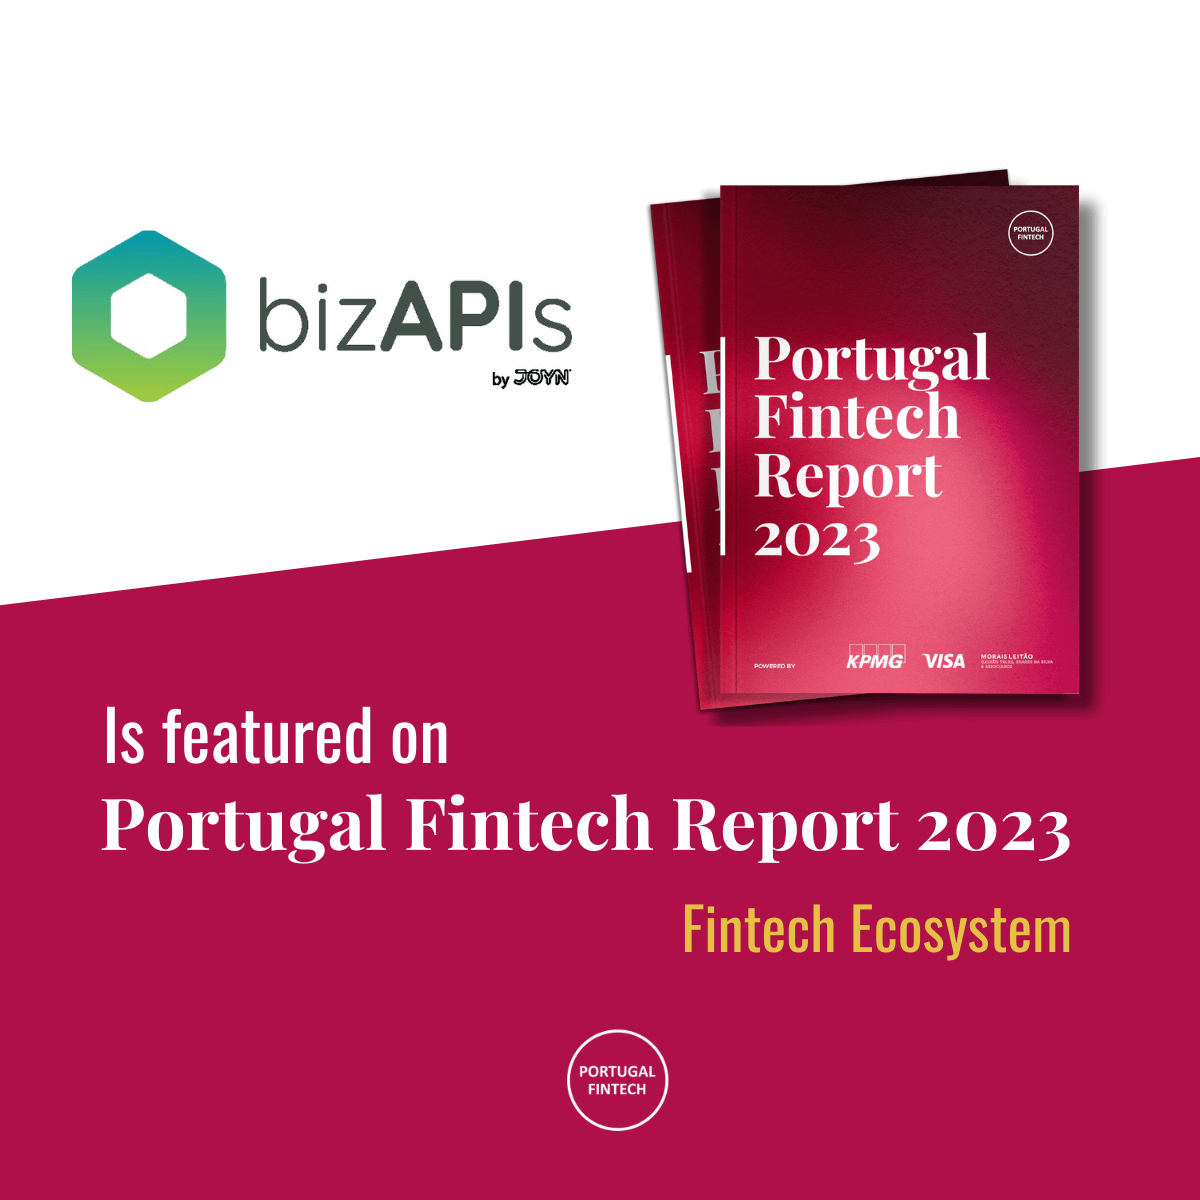 bizAPIs is now part of the Portuguese Fintech Ecosystem